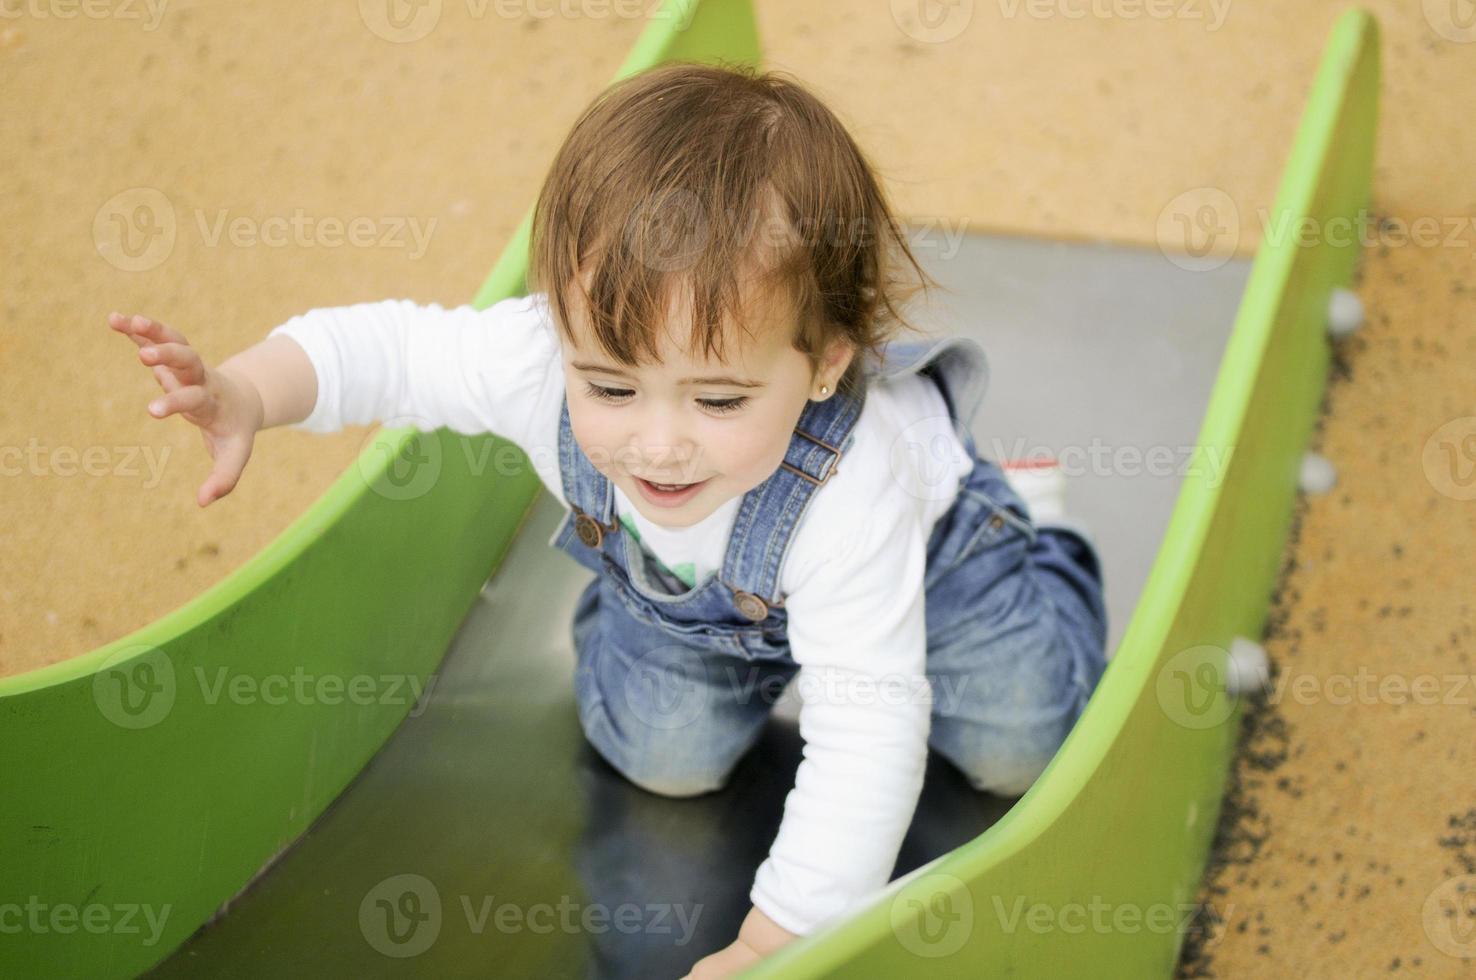 bambina che gioca in un parco giochi urbano. foto